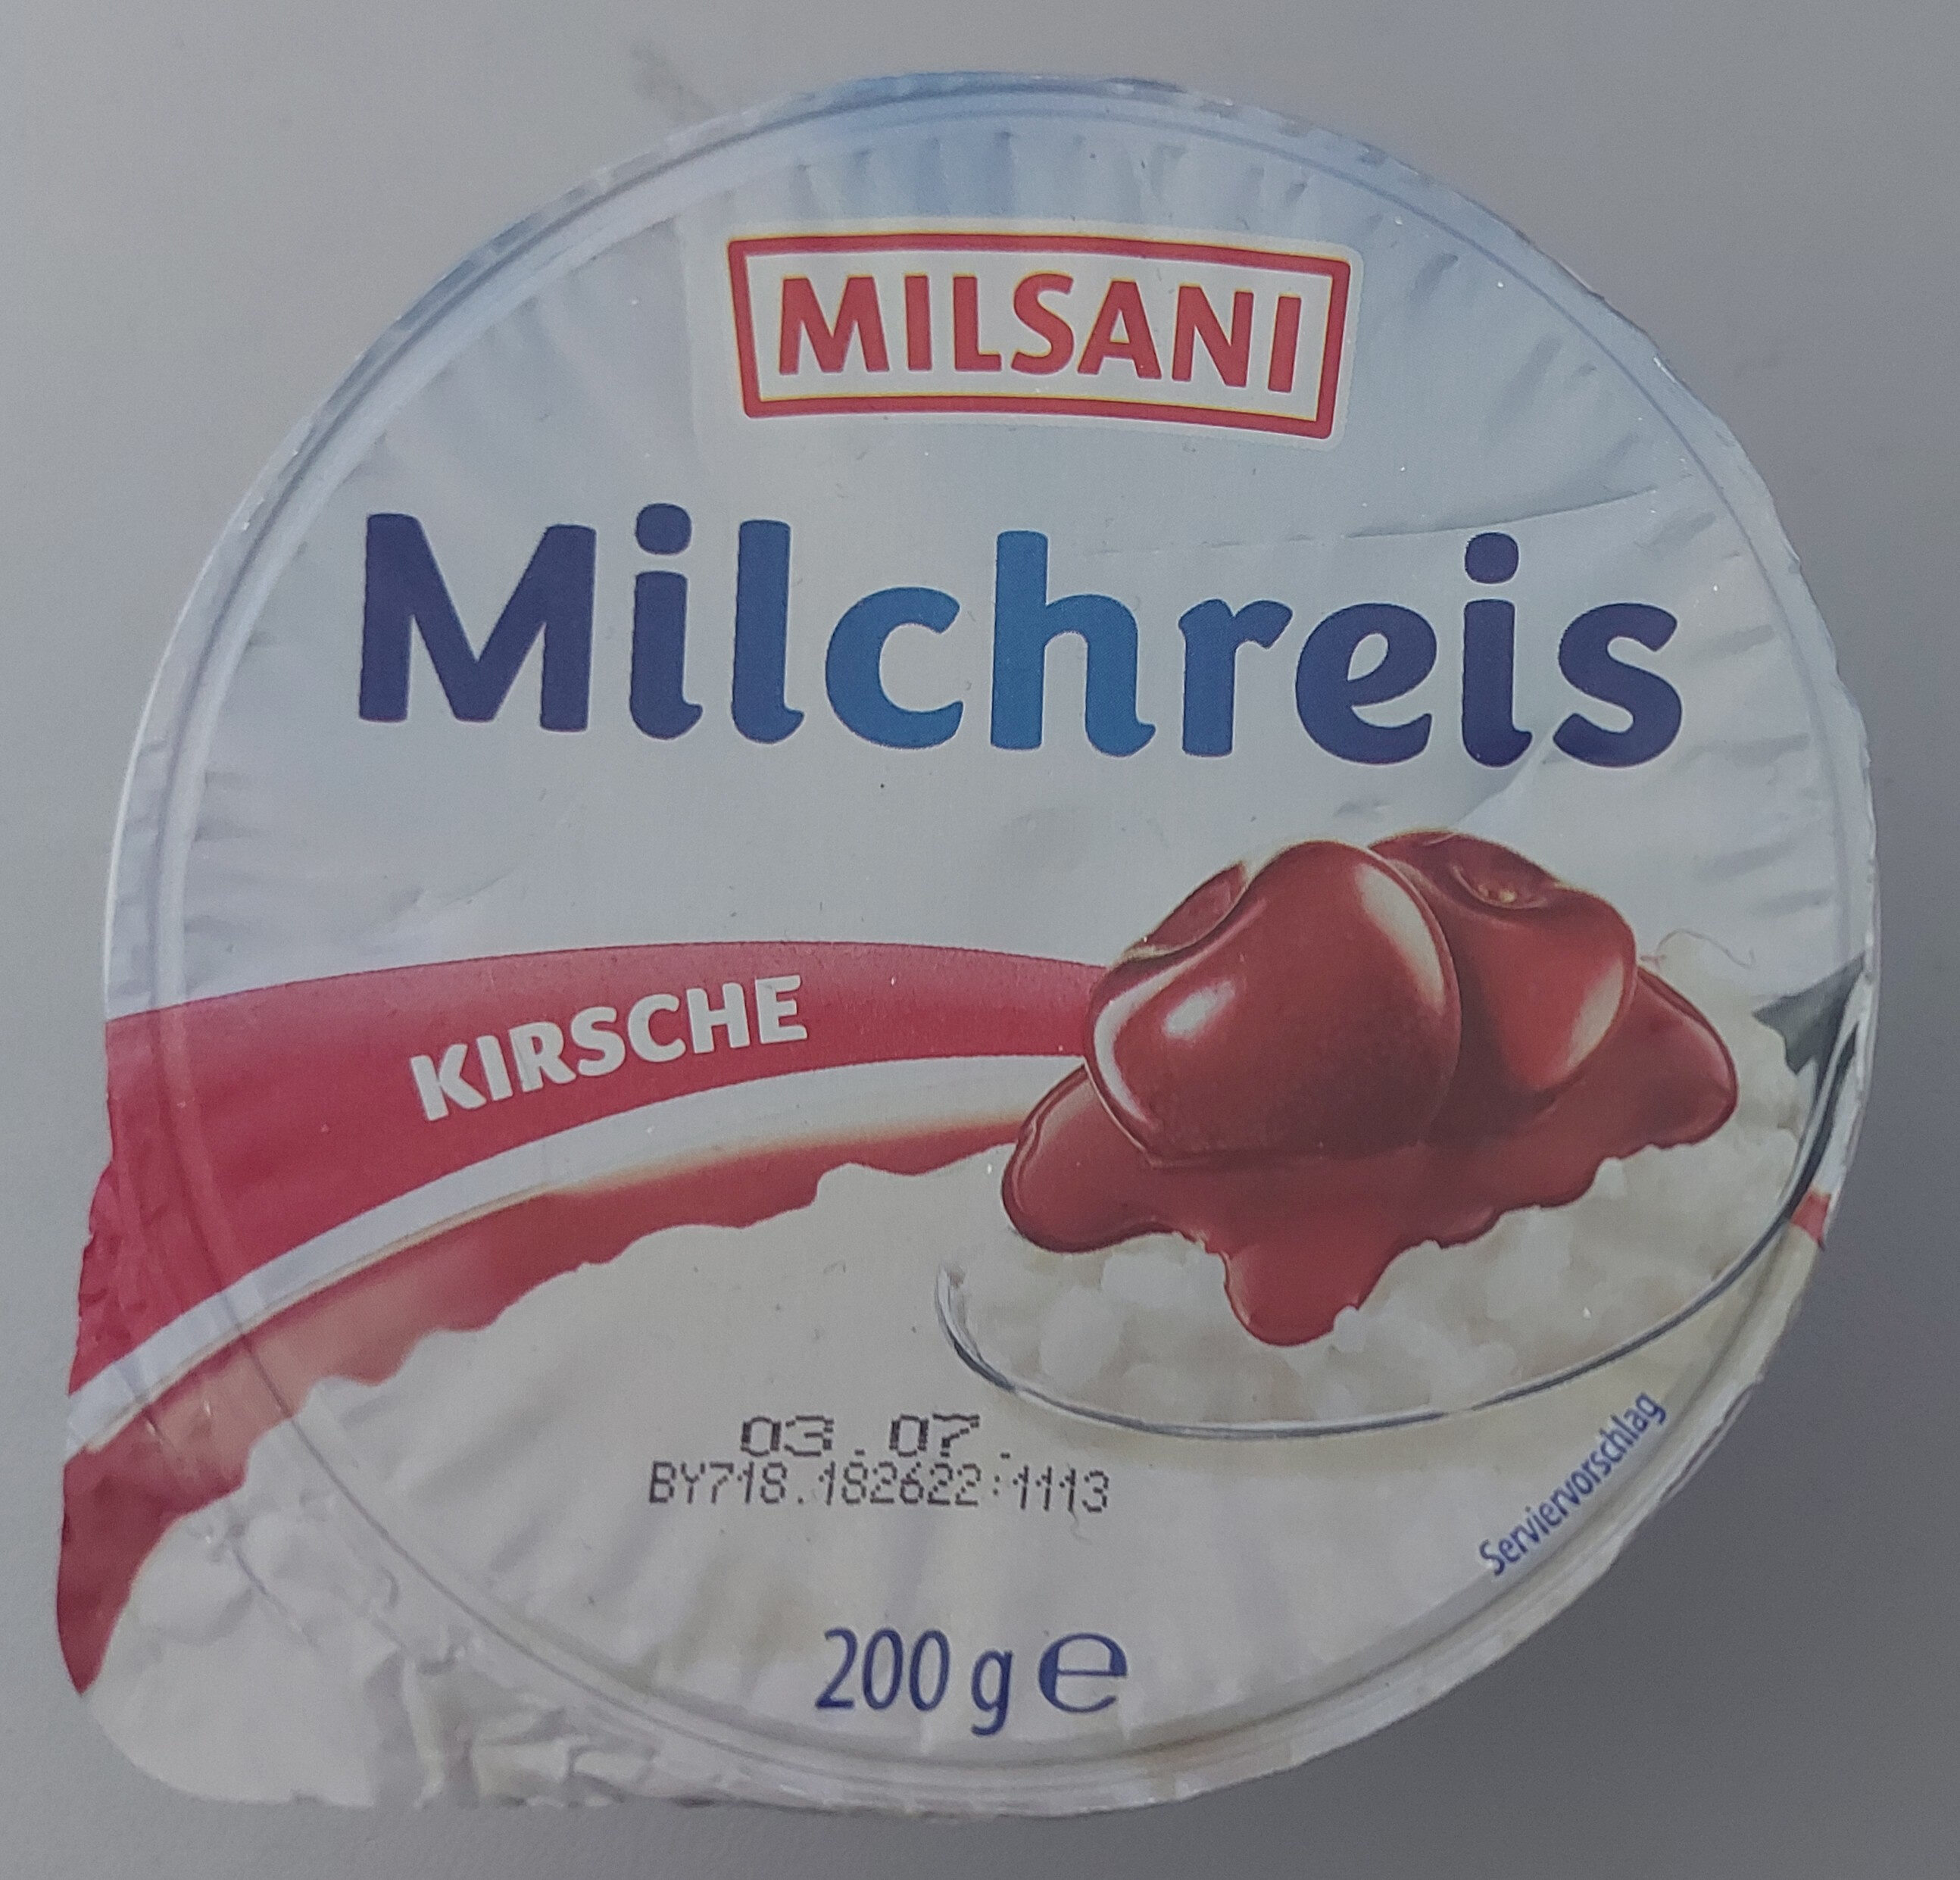 Milchreis - Kirsche - Product - de